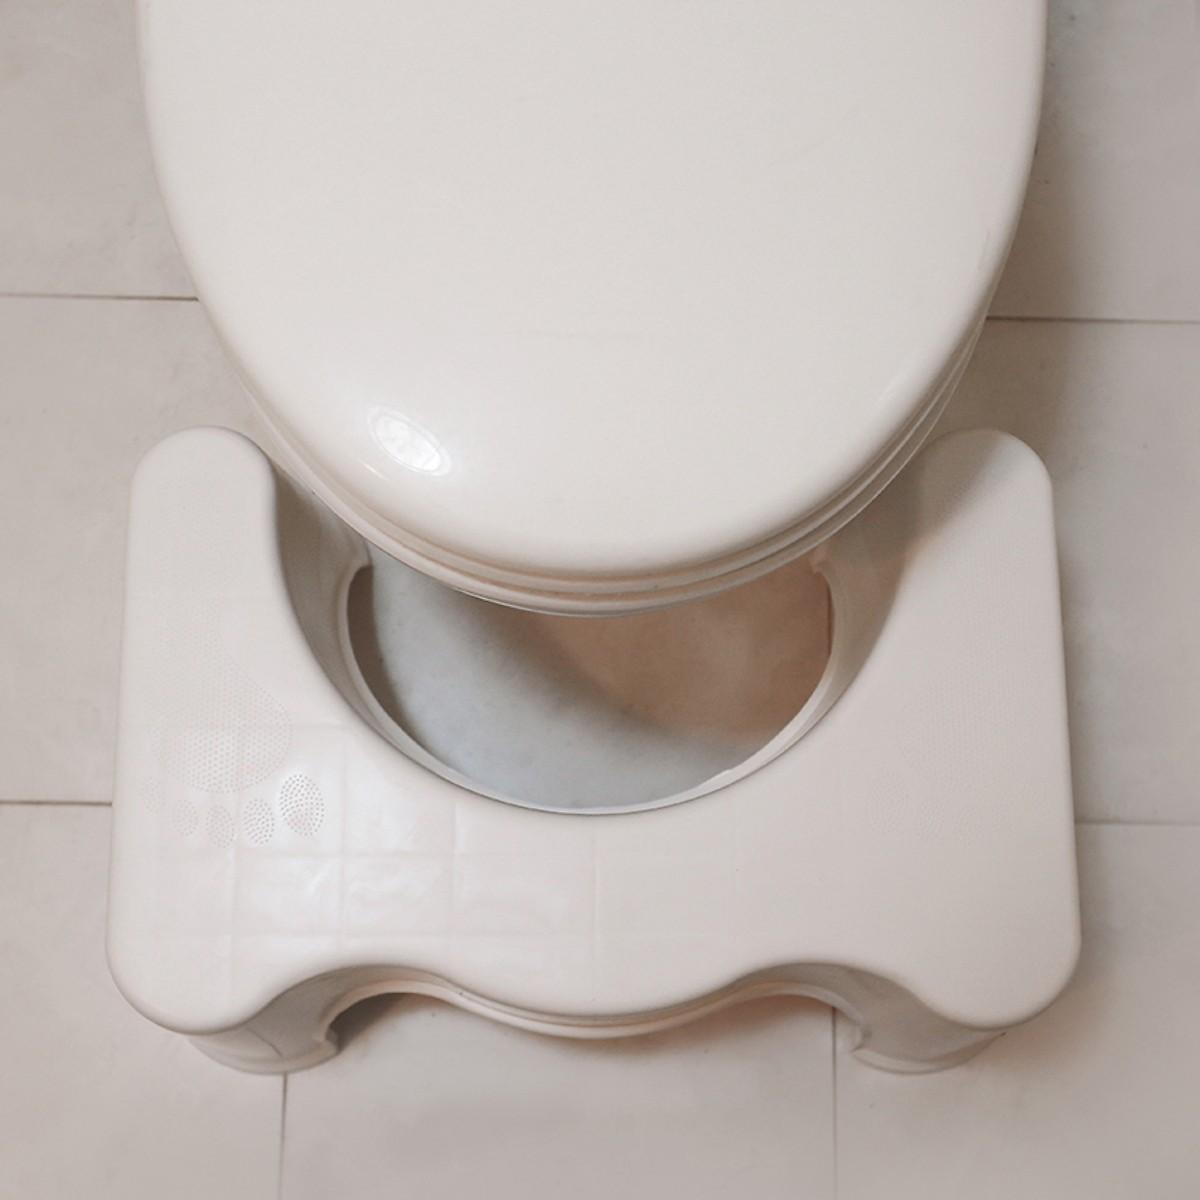 Ghế Kê Chân Toilet Chống Táo Bón Ngăn Ngừa Các Bệnh Tiêu Hóa Khi Đi Vệ Sinh - Hàng Chất Lượng